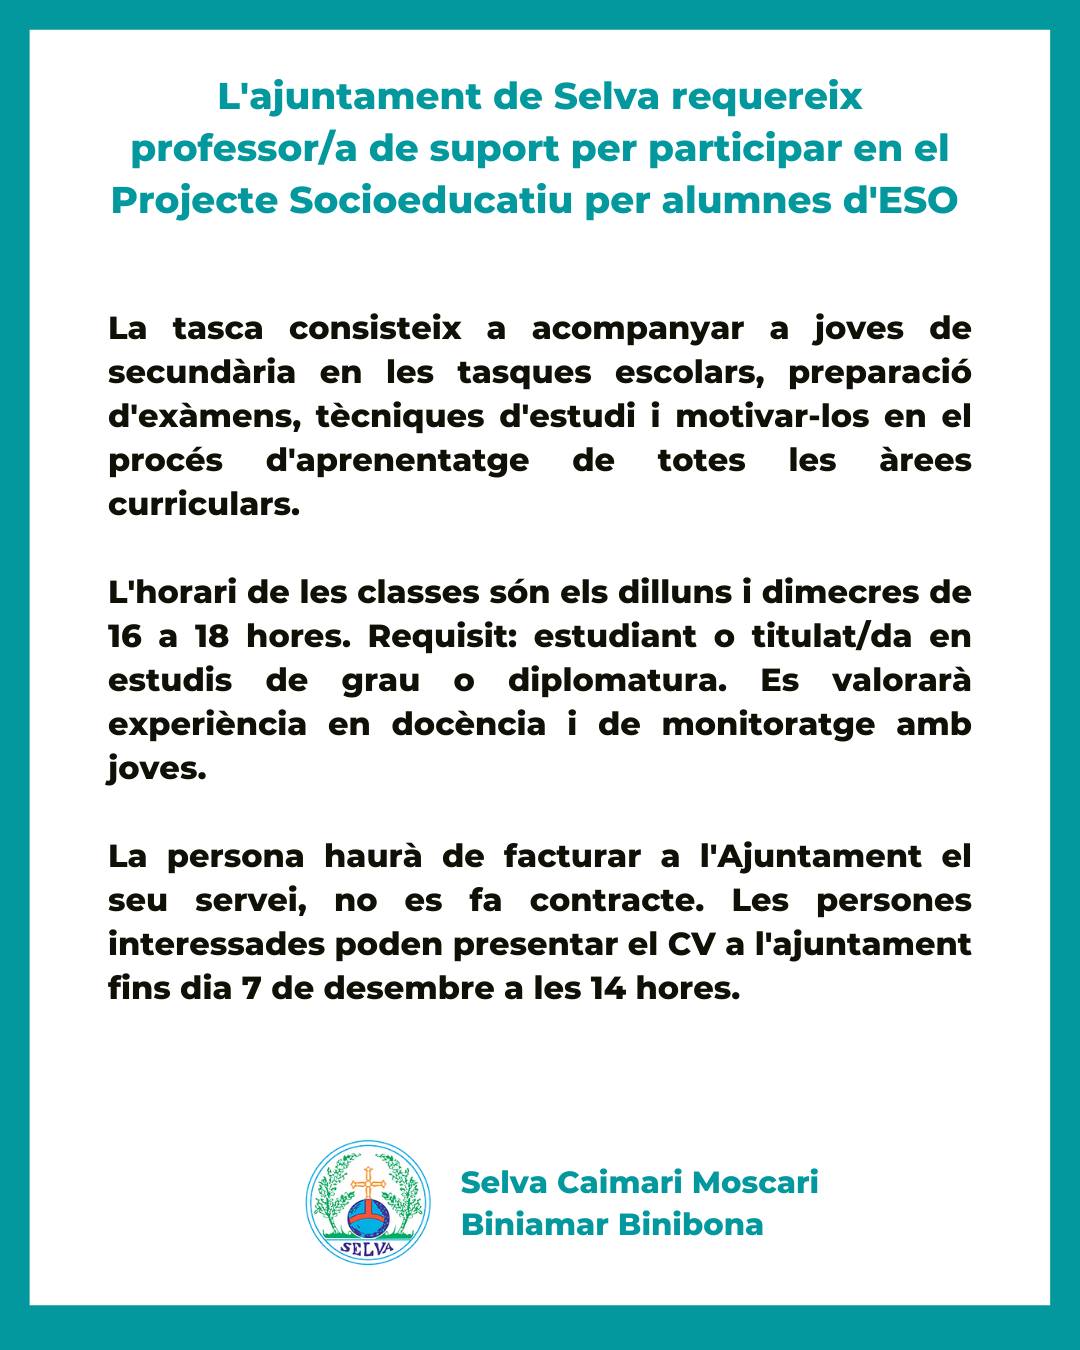 L'ajuntament de Selva requereix professor/a de suport per participar en el Projecte Socioeducatiu per alumnes d'ESO